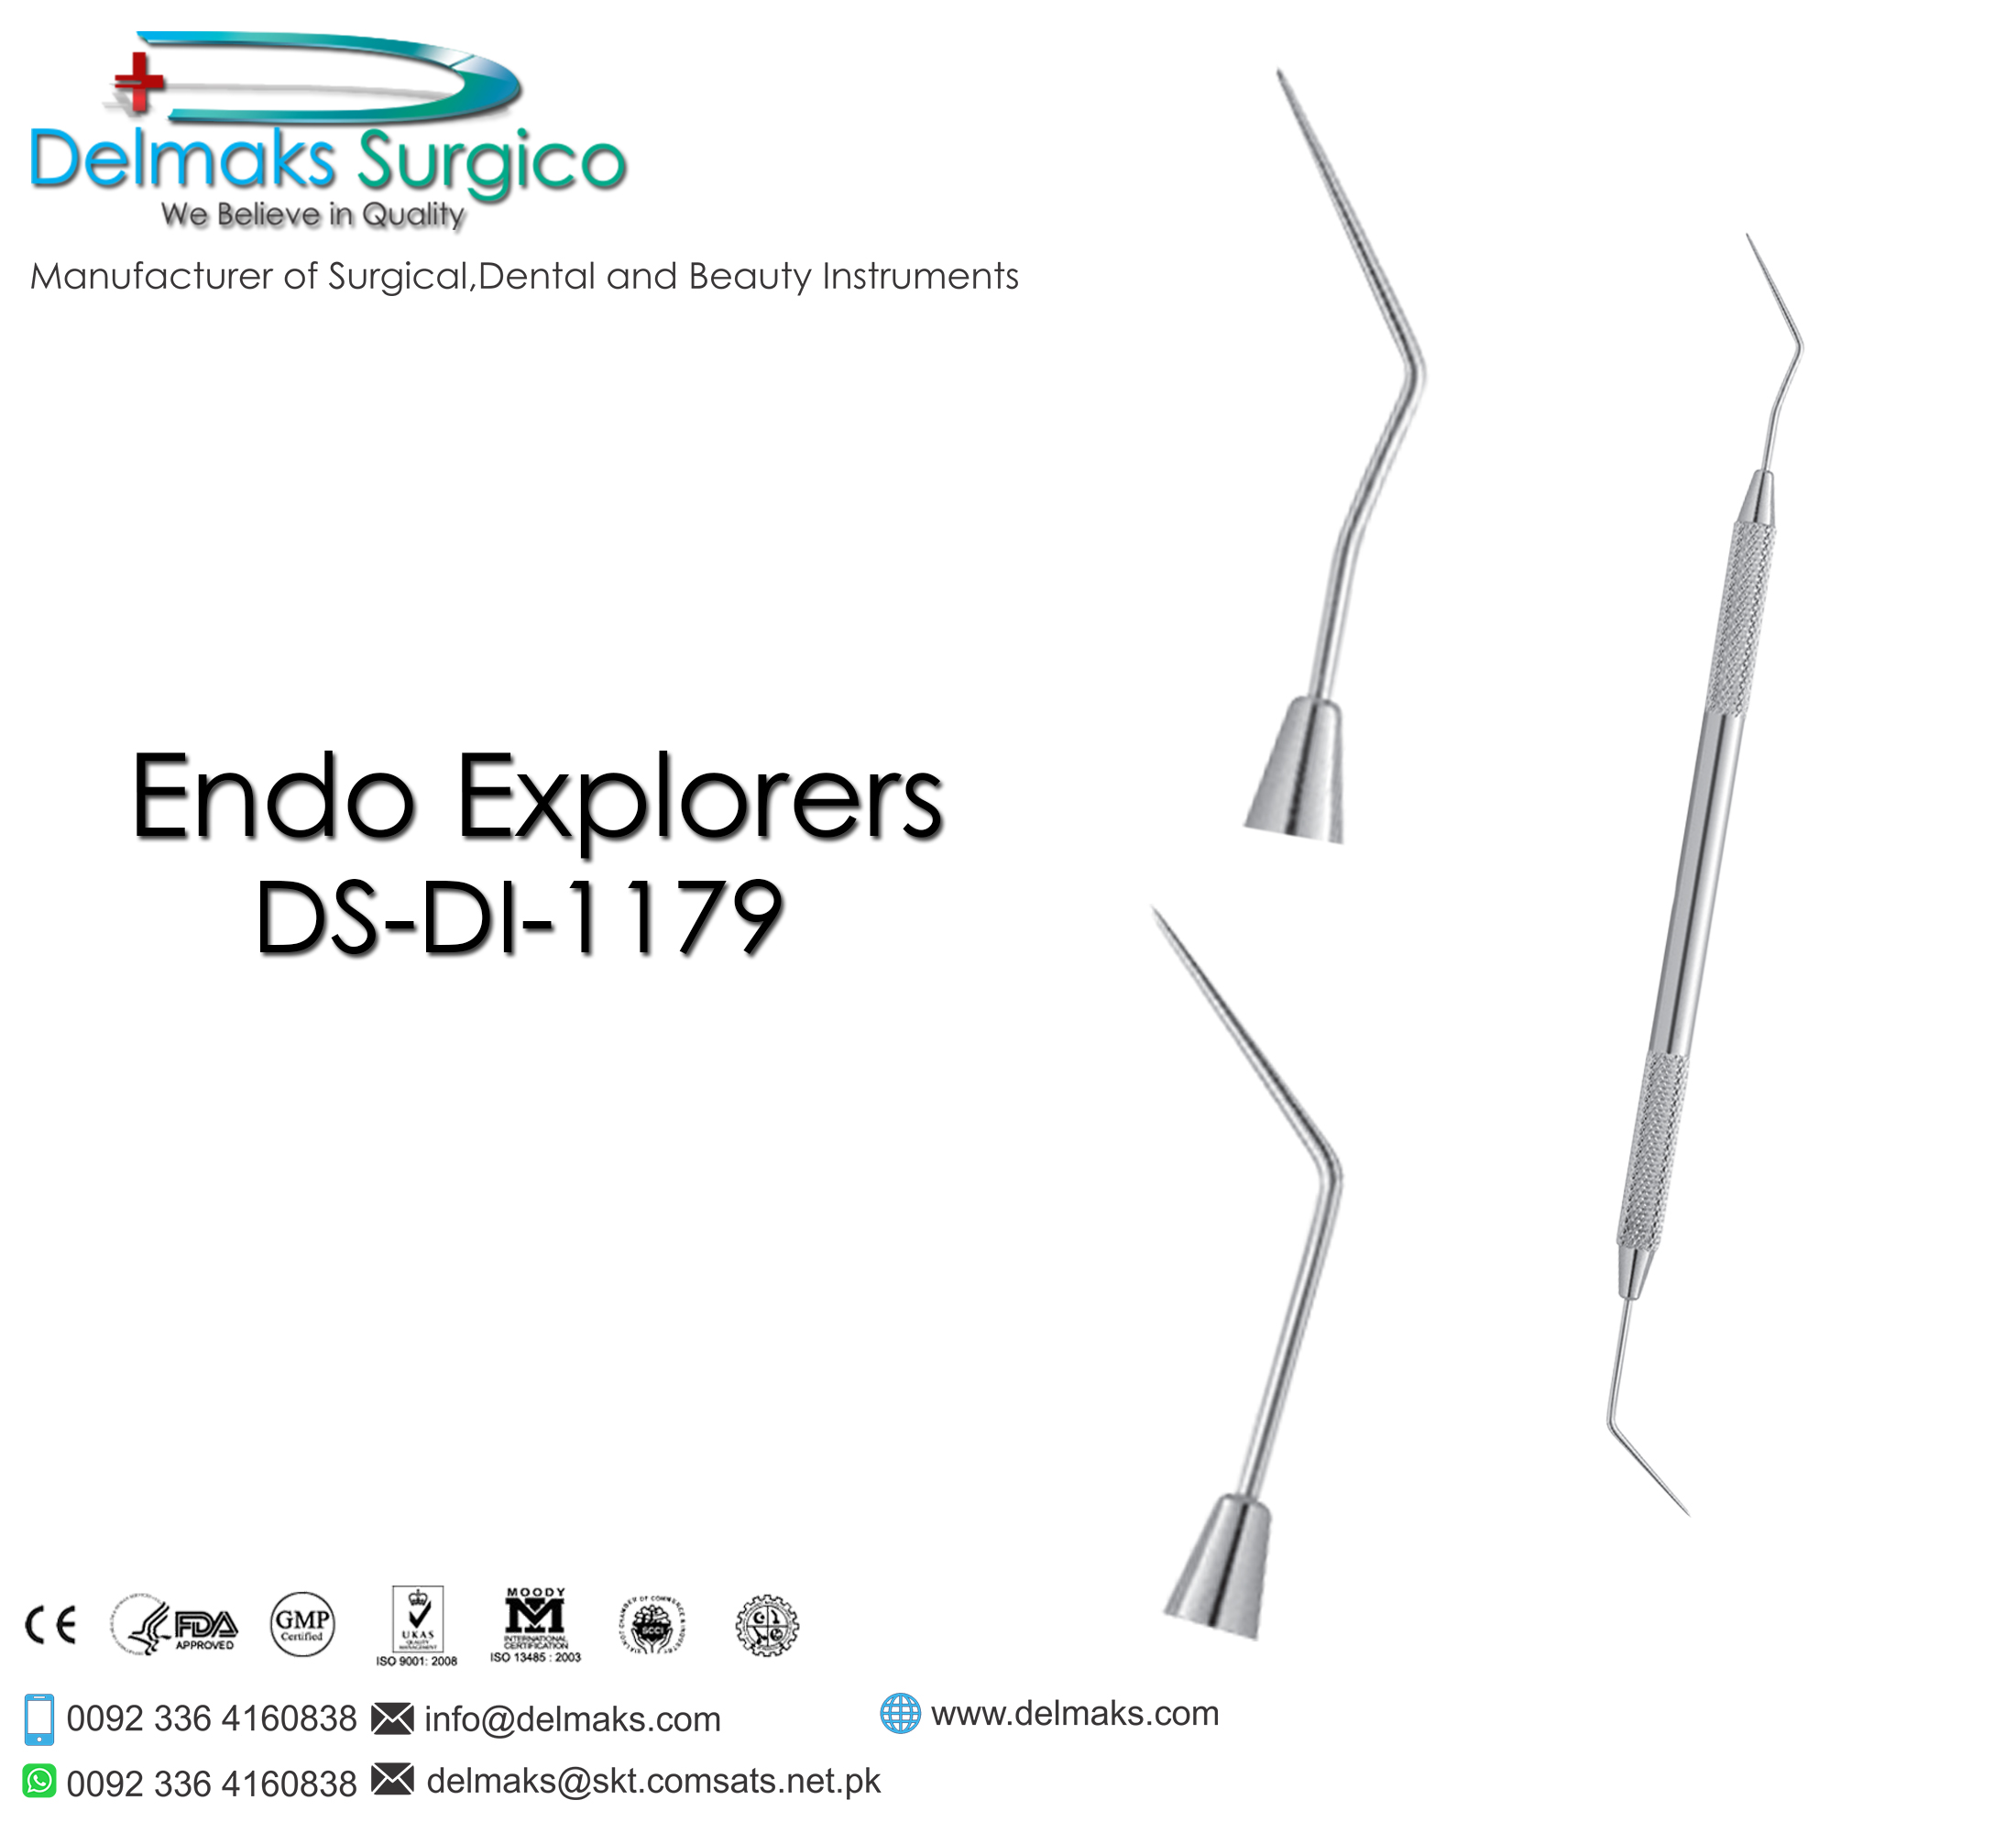 Endo Explorers-Endodontic Instruments-Dental Instruments-Delmaks Surgico